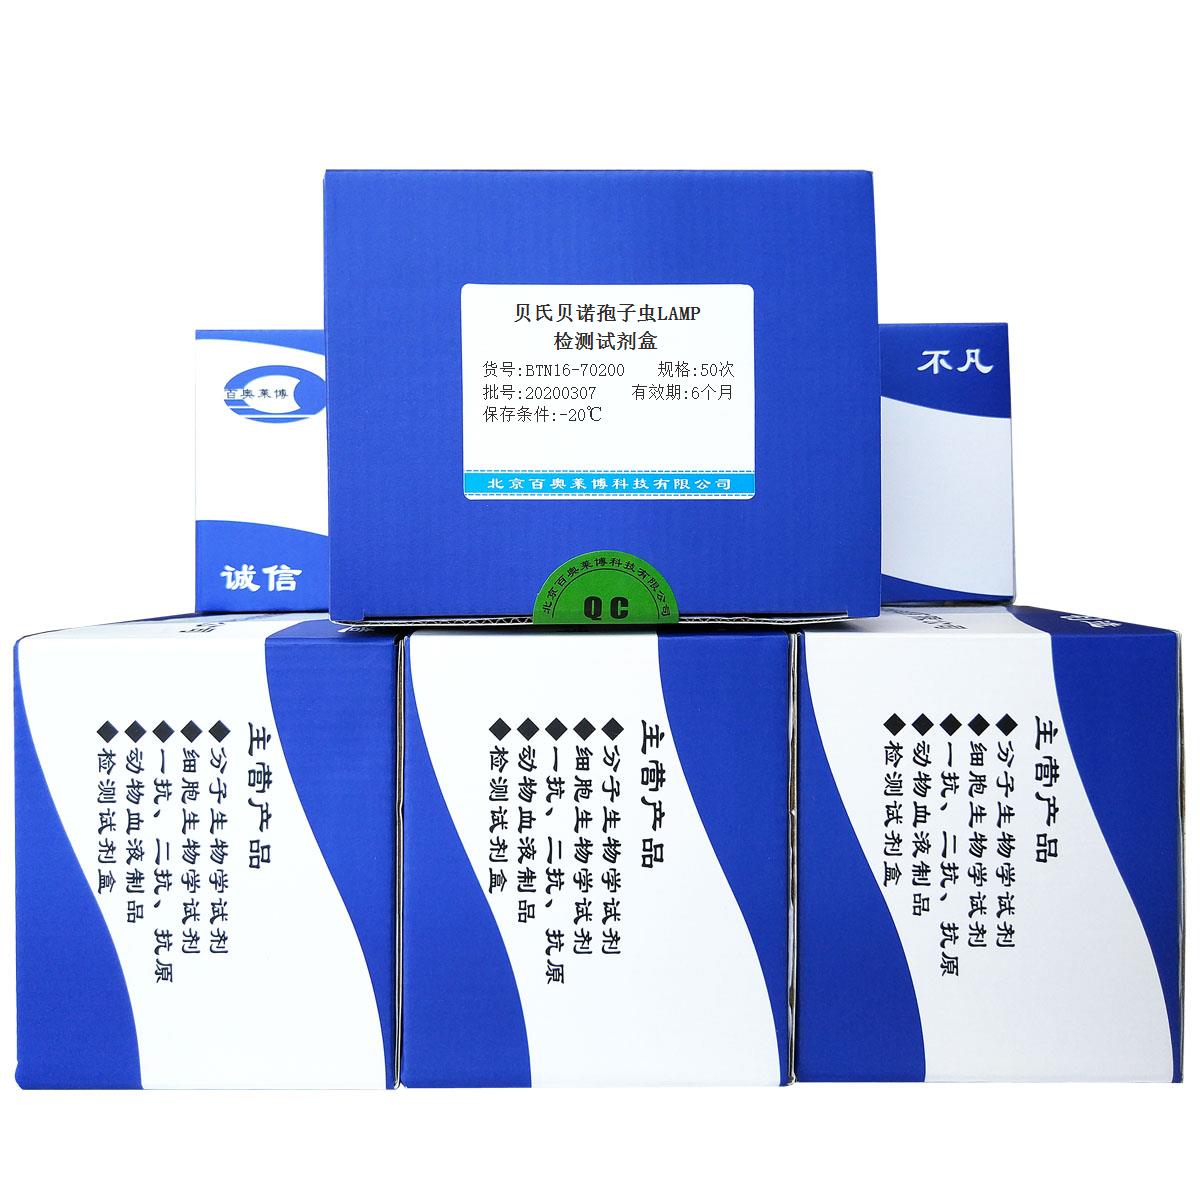 贝氏贝诺孢子虫LAMP检测试剂盒北京供应商